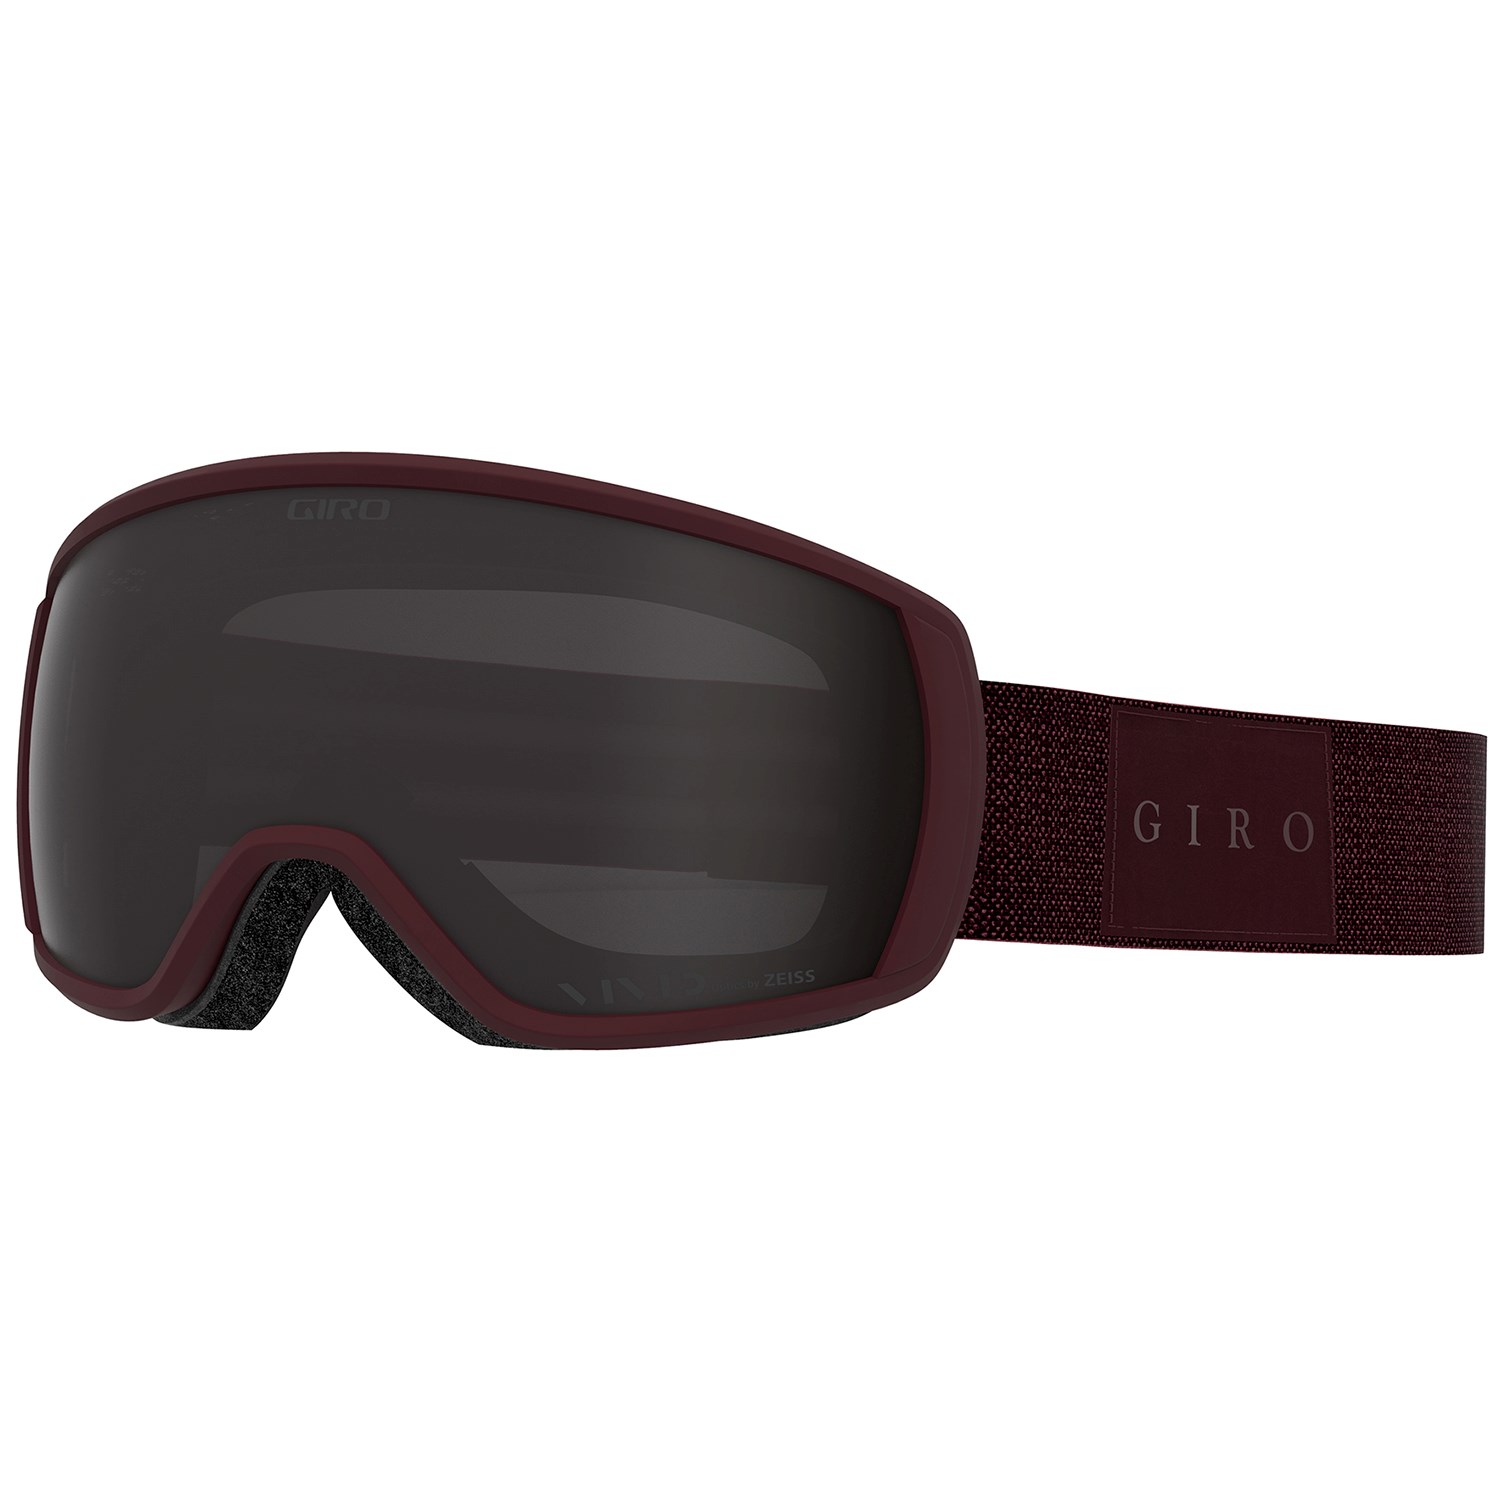 Giro Balance red Skibrille mit scharlachroter Flash-Beschichtung Art 7071434 